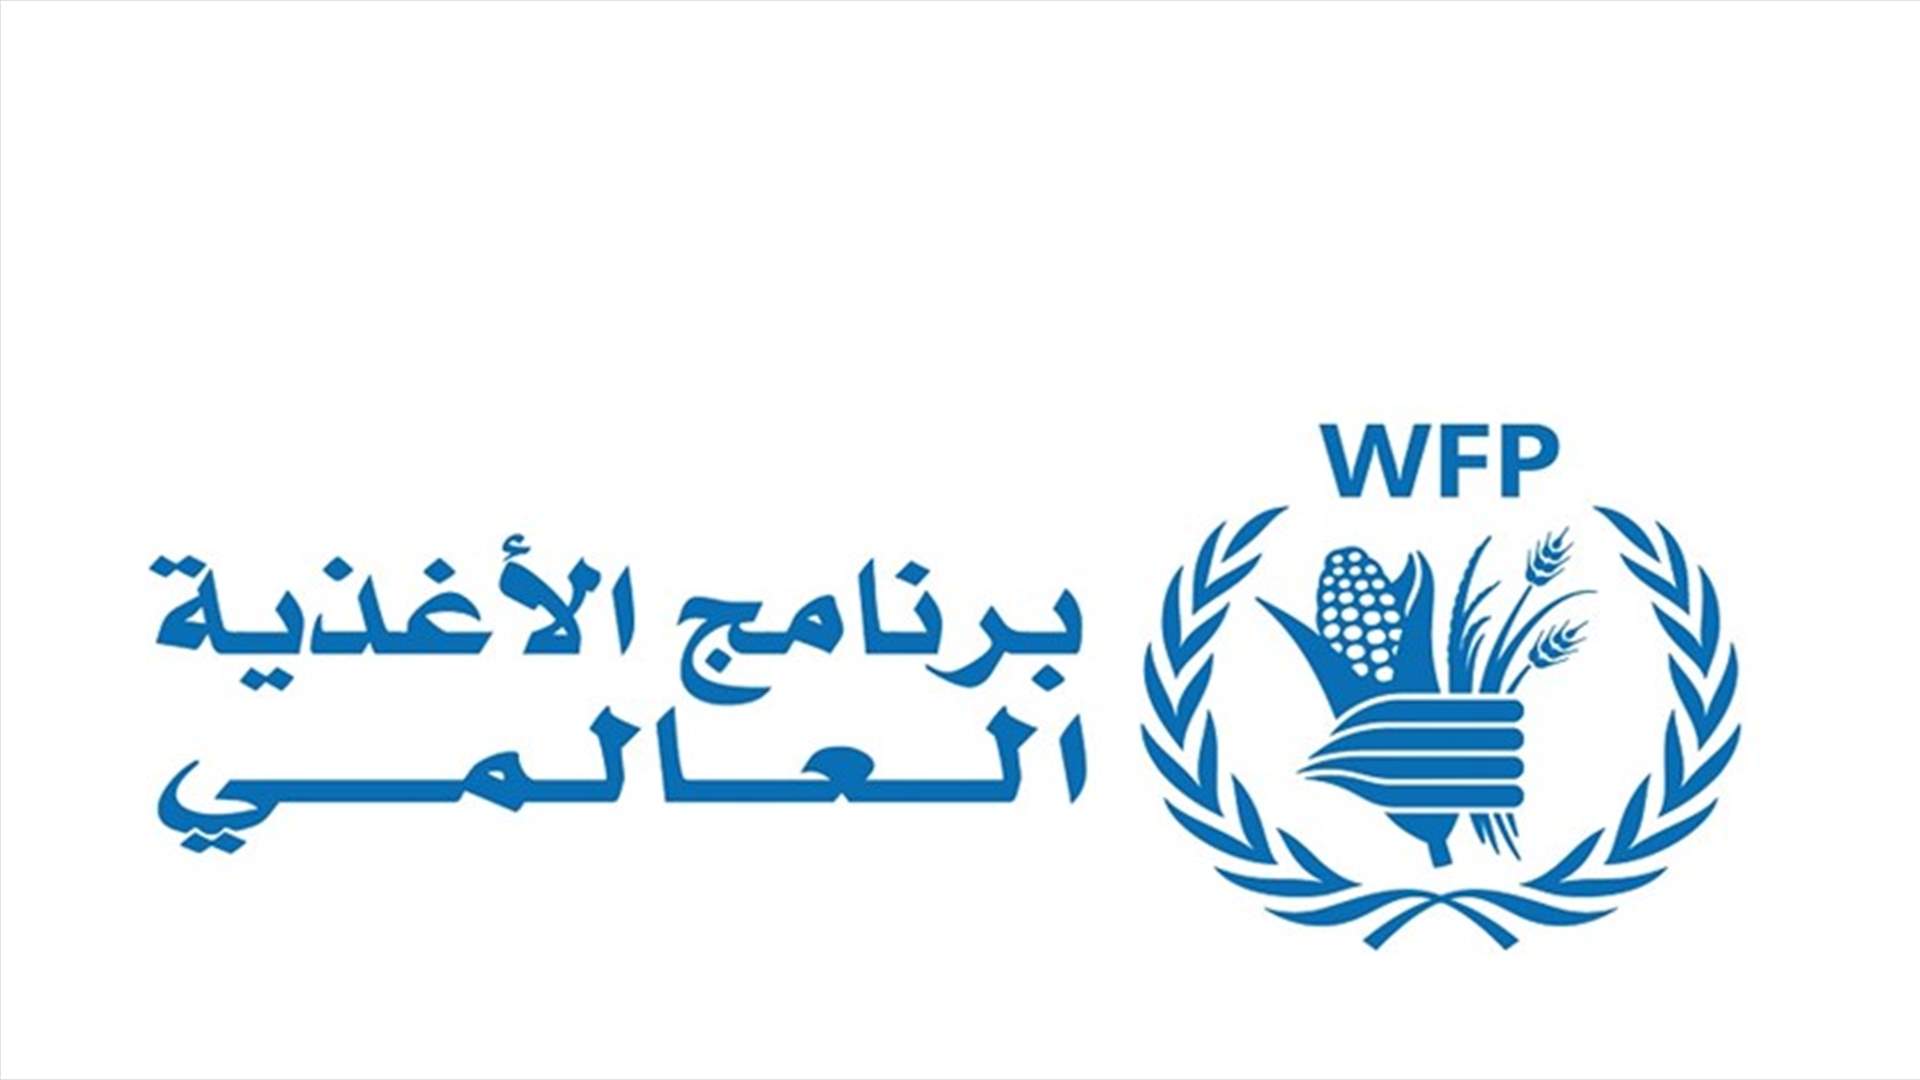 برنامج الأغذية العالمي: فرنسا تزيد من دعمها للبنان في عام مليء بالتحديات